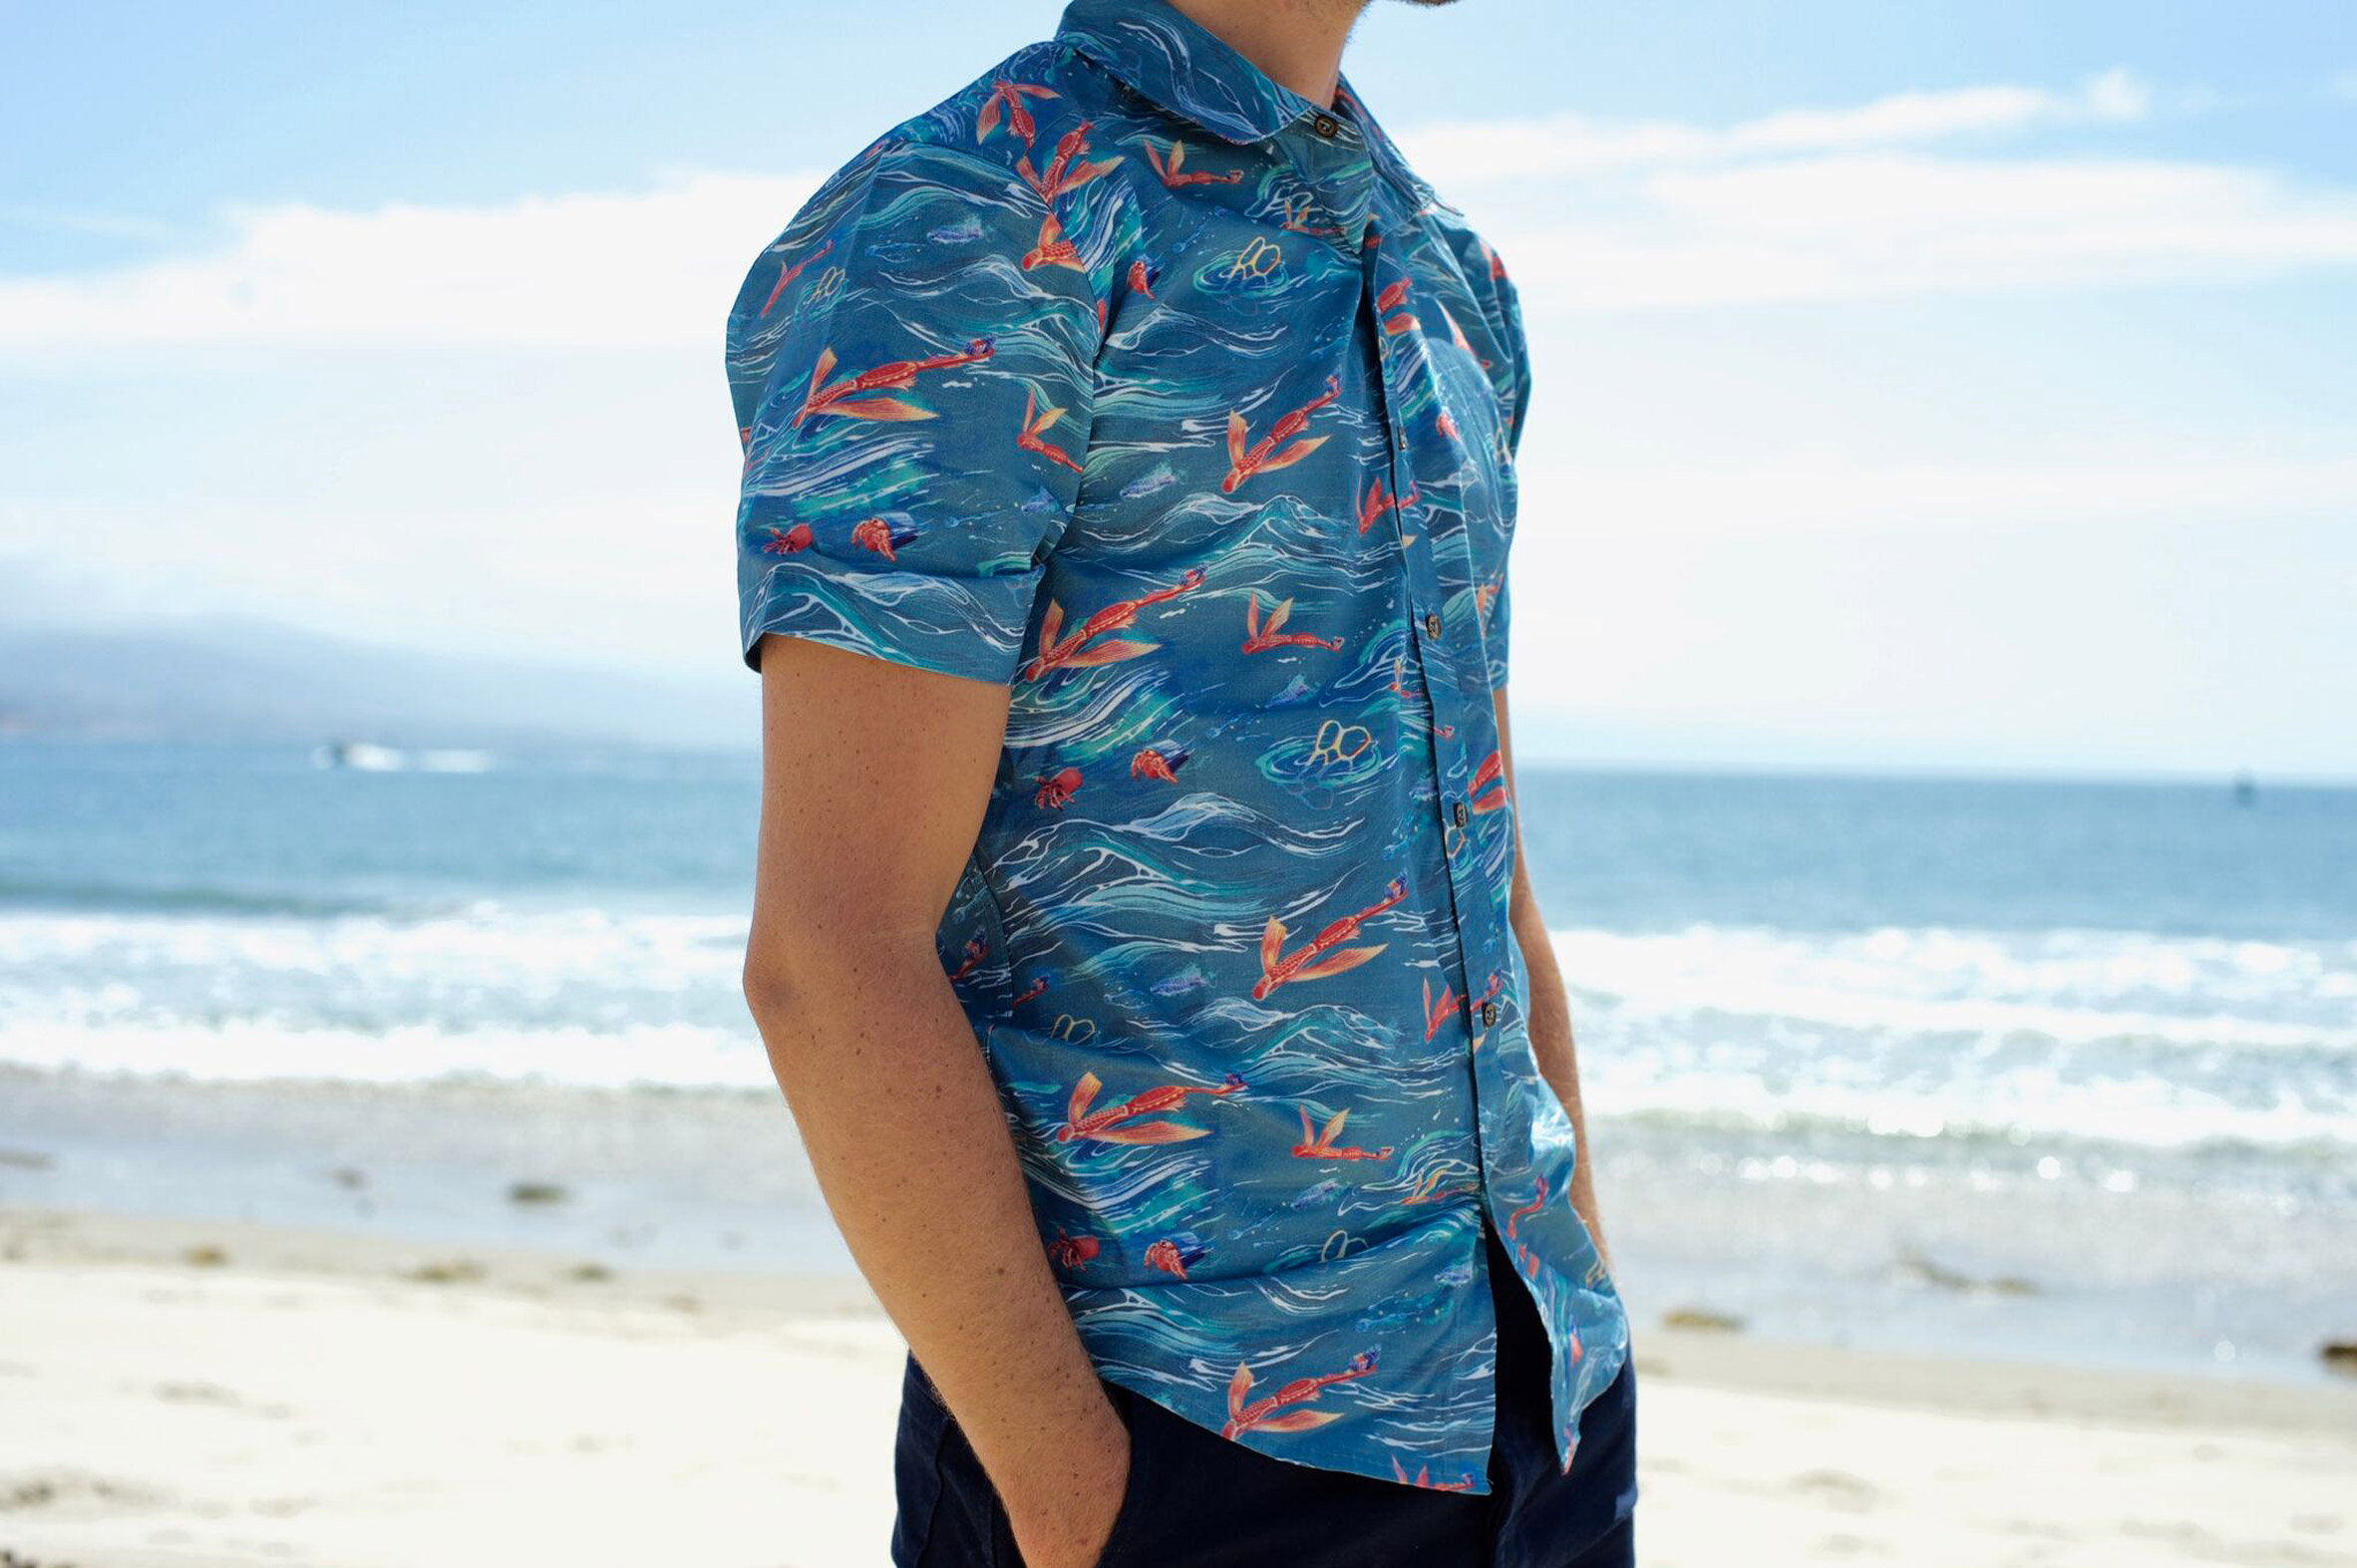 Adolfo Correa creates Hawaiian shirt from ocean plastic